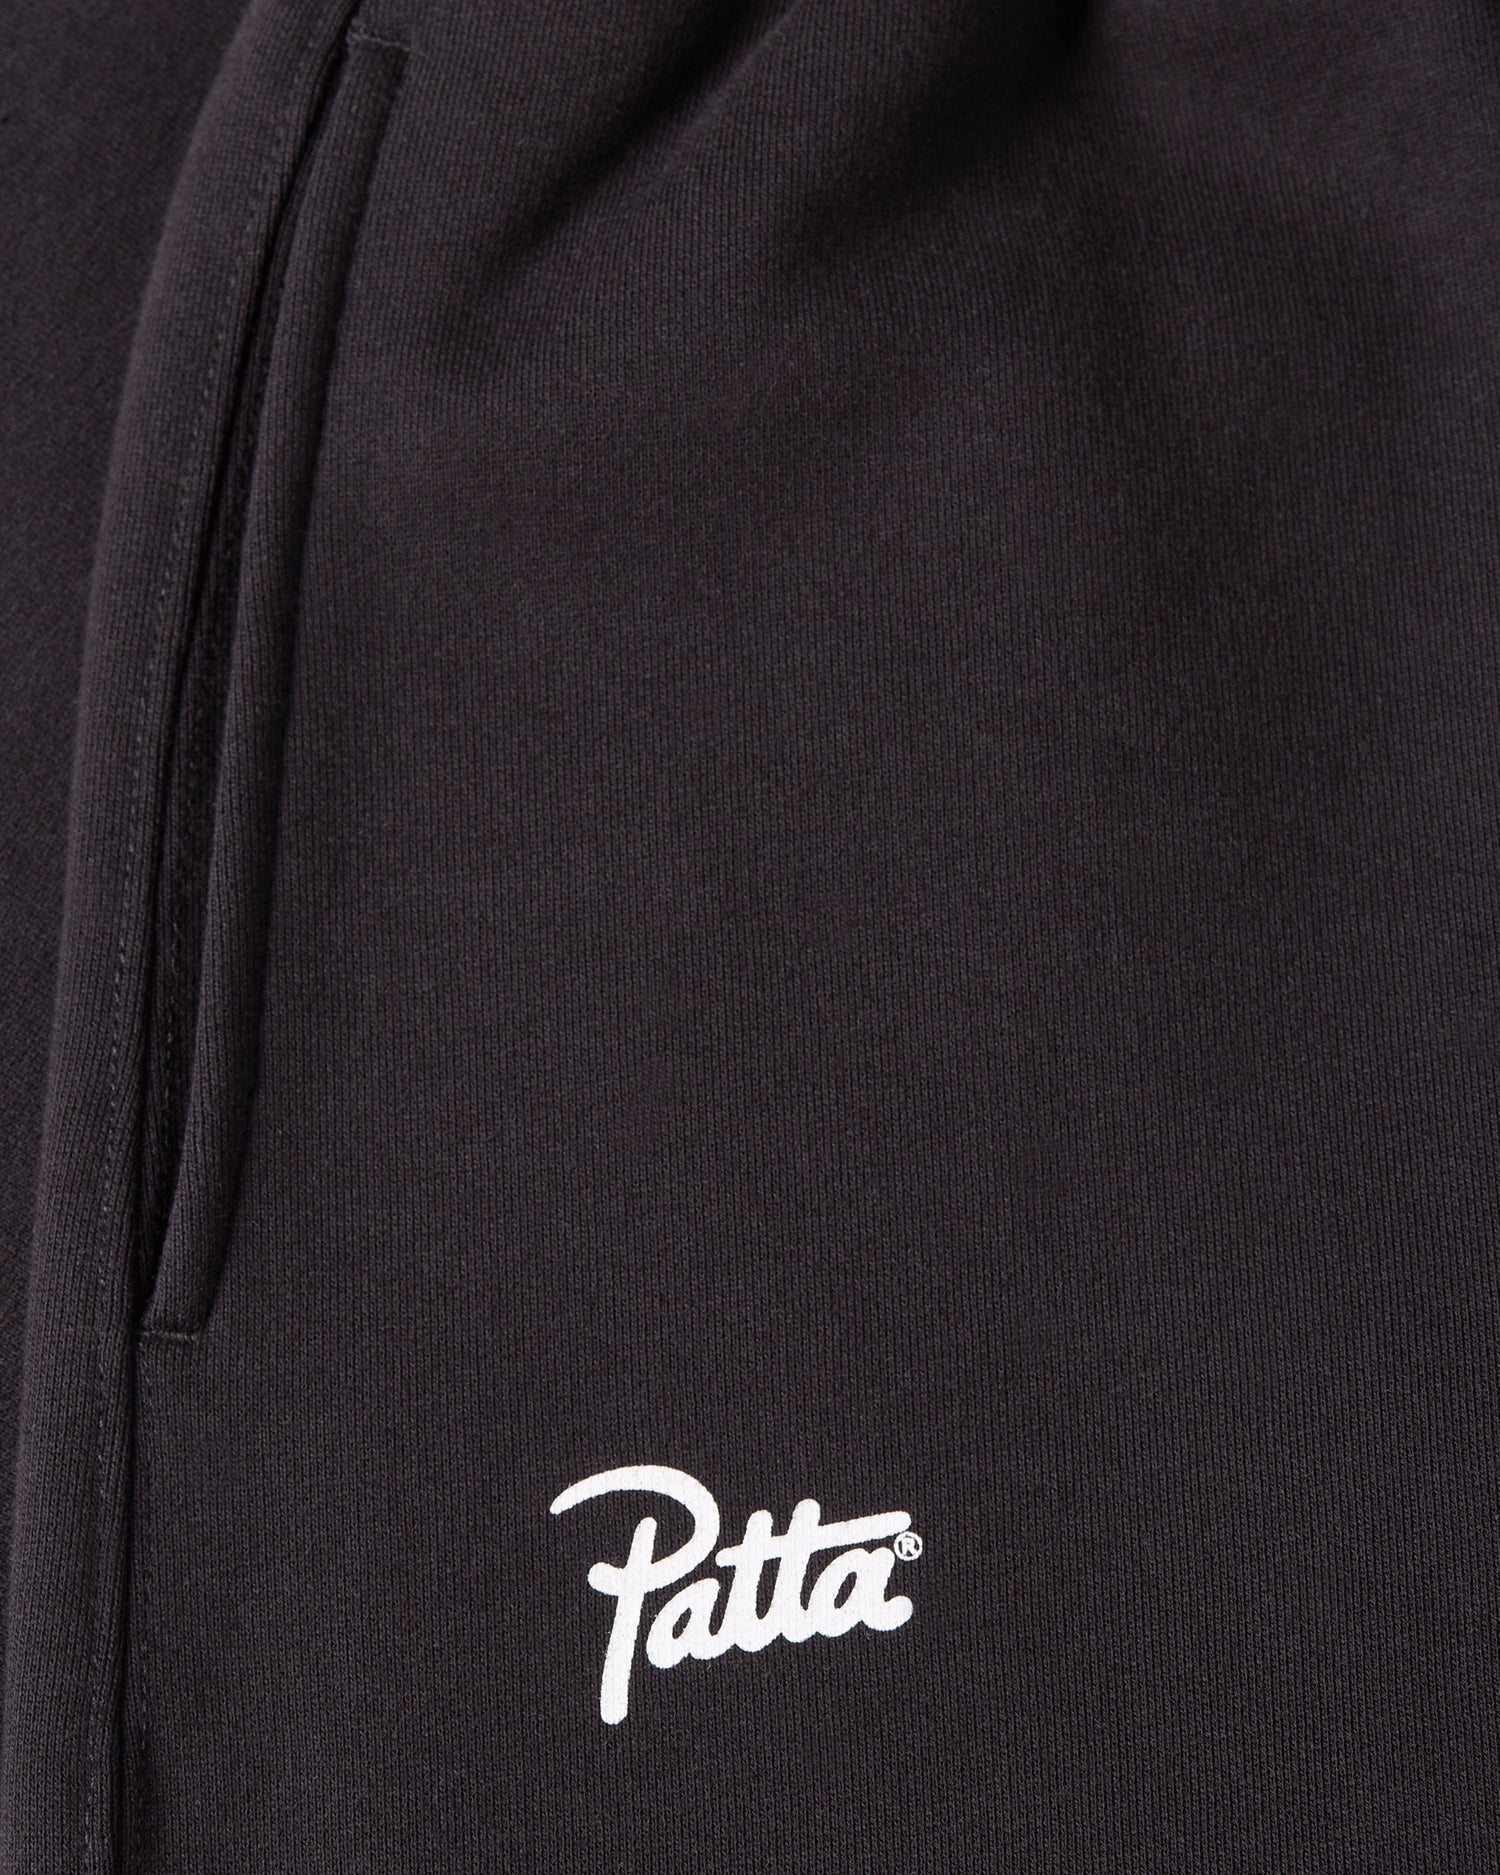 Patta Classic Jogging Pants (Black)